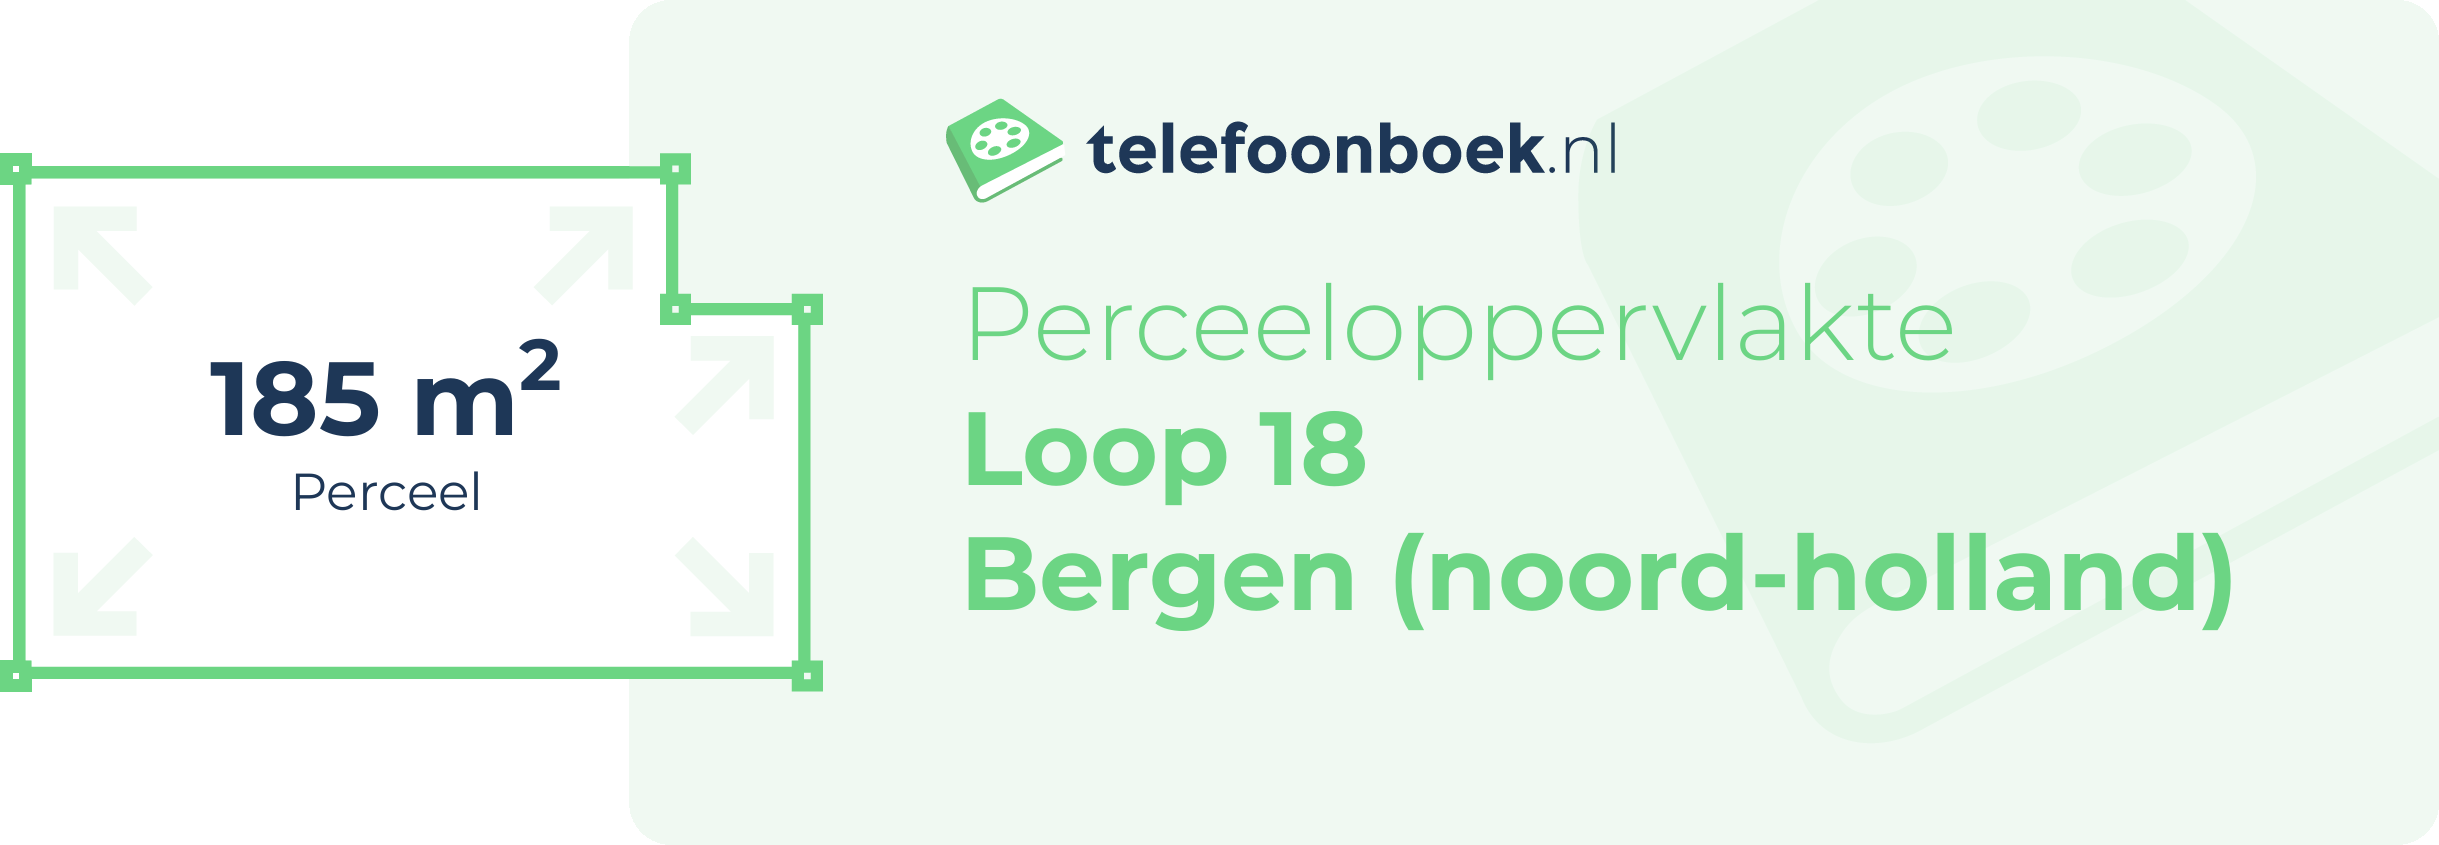 Perceeloppervlakte Loop 18 Bergen (Noord-Holland)